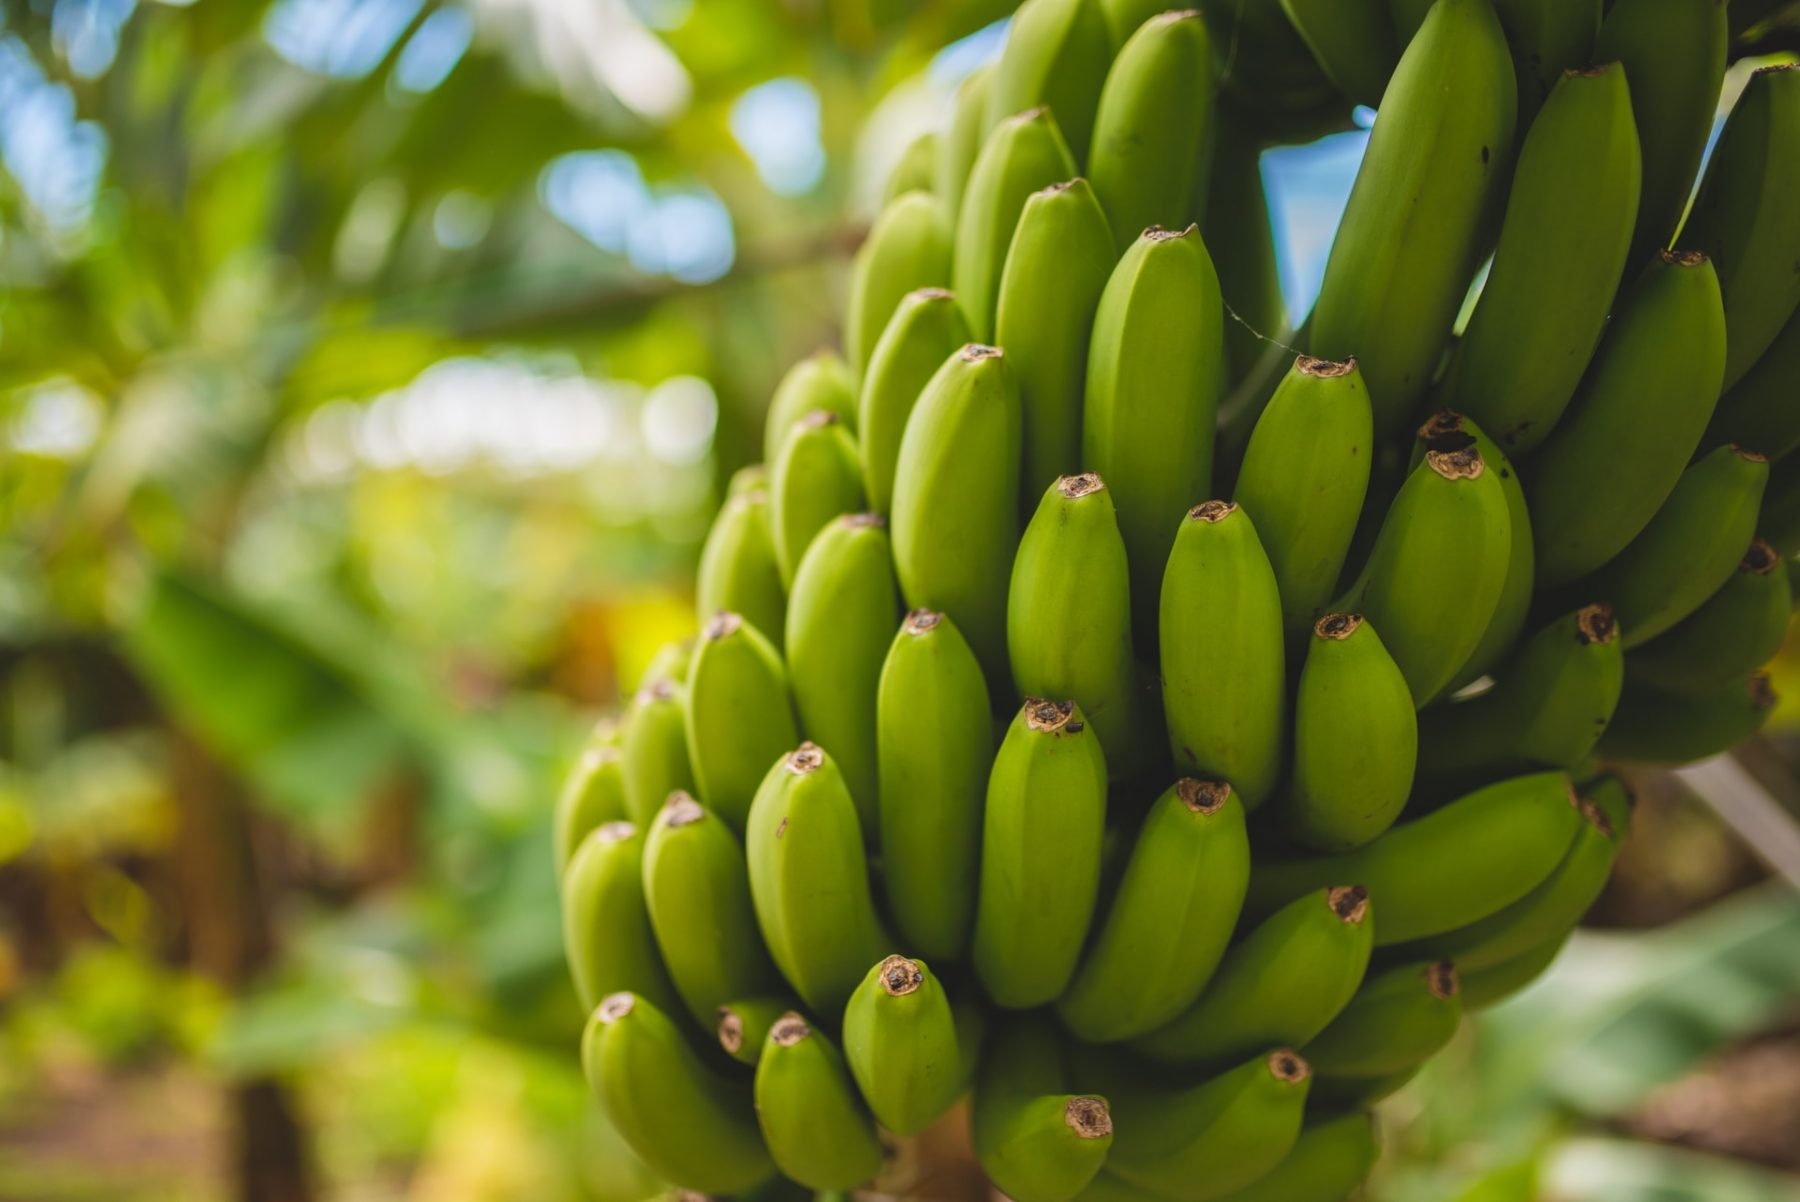 Μπανάνες DNA: Μοιραζόμαστε πράγματι το 50% του DNA μας με τις μπανάνες;